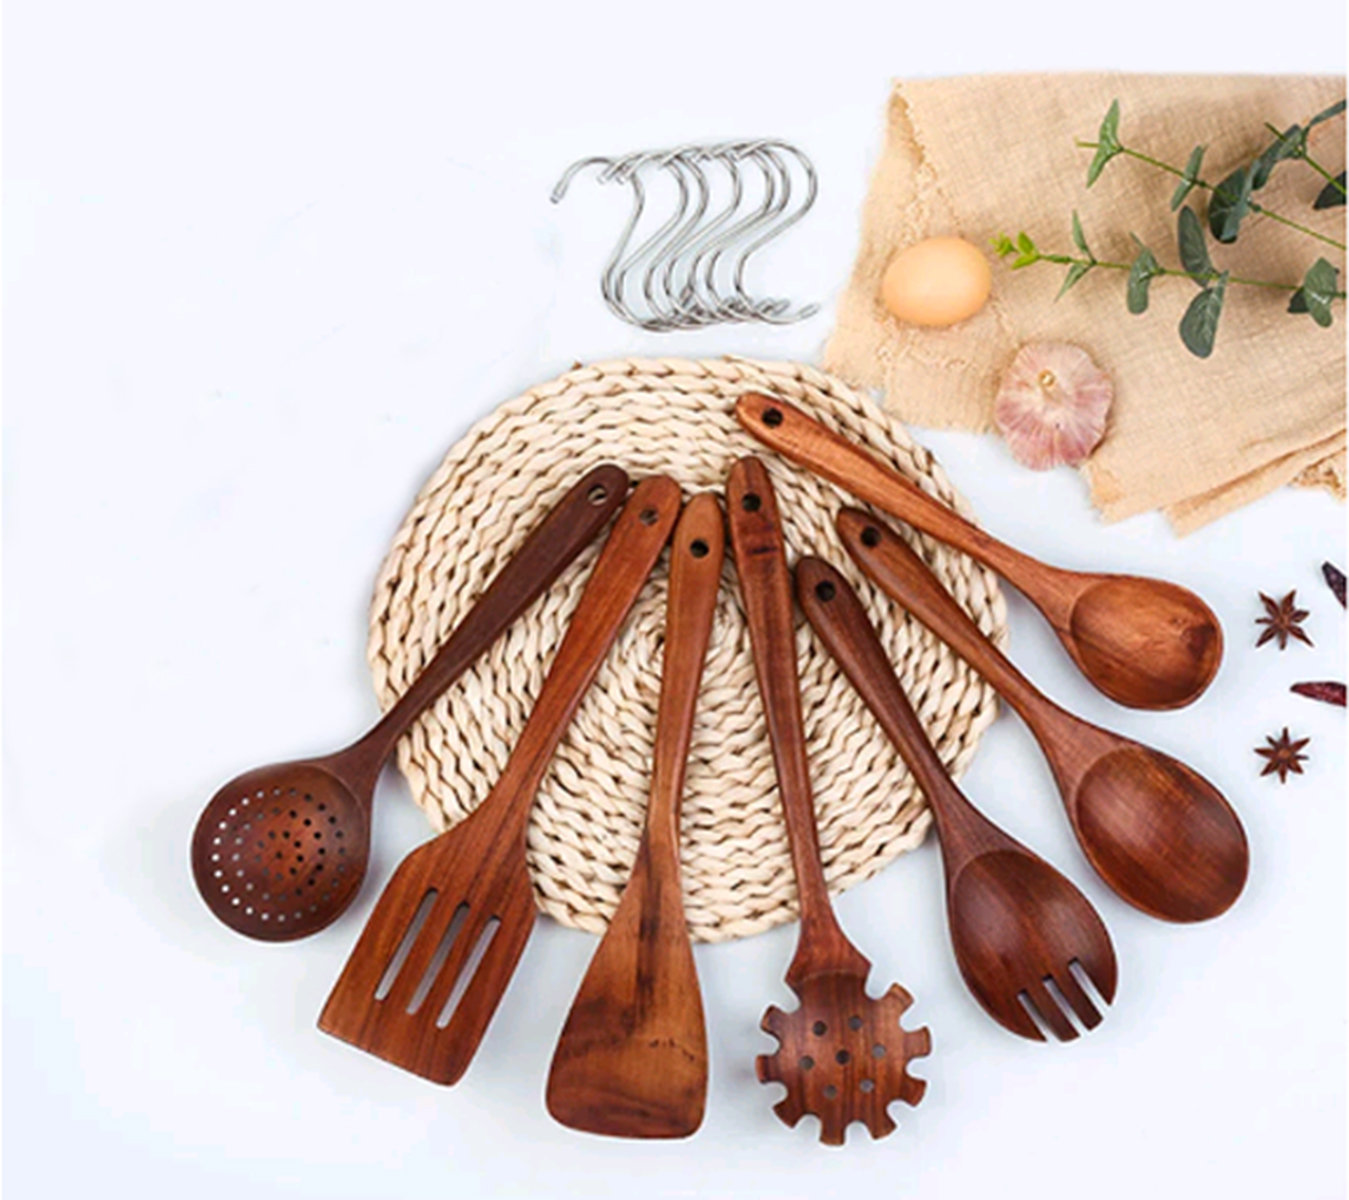 Zulay Kitchen 9 Piece Teak Wooden Utensils Cooking Utensil Set